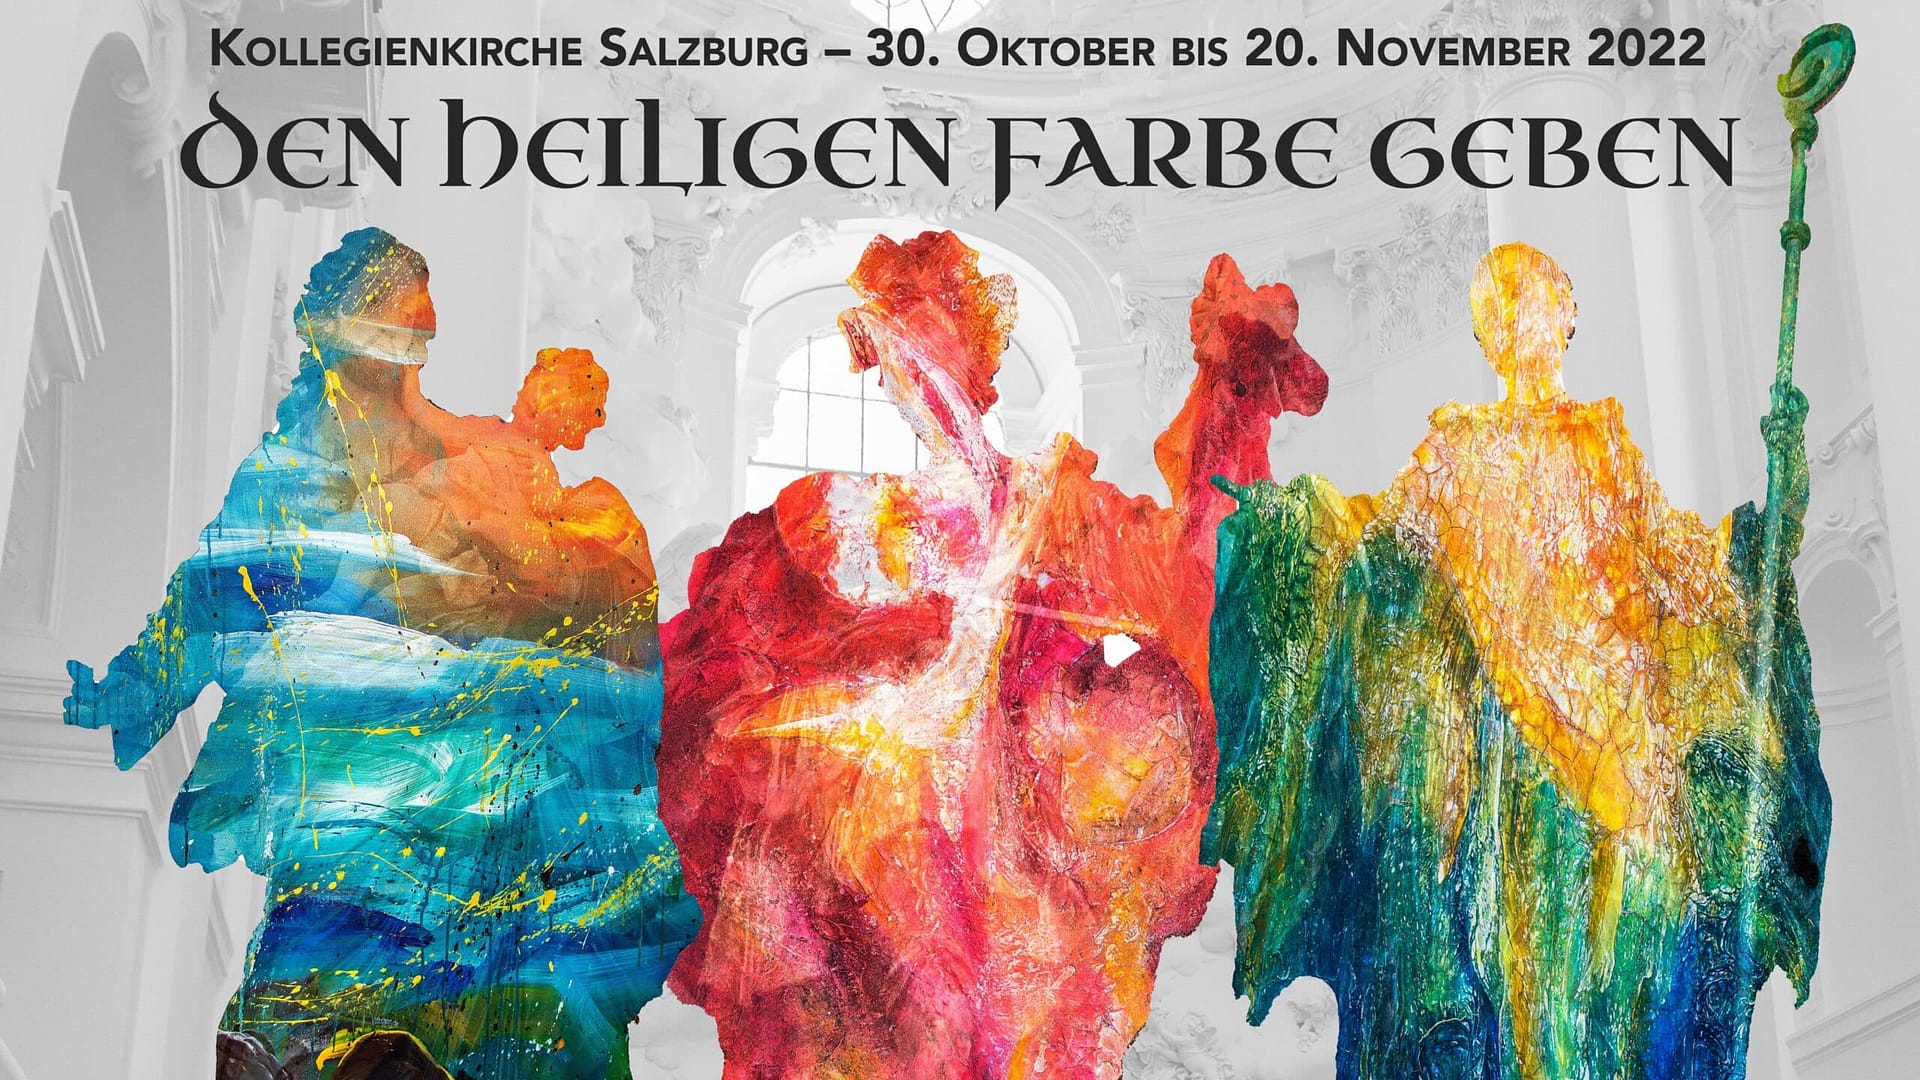 Einladung zur Ausstellung in der Kollegienkirche Salzburg